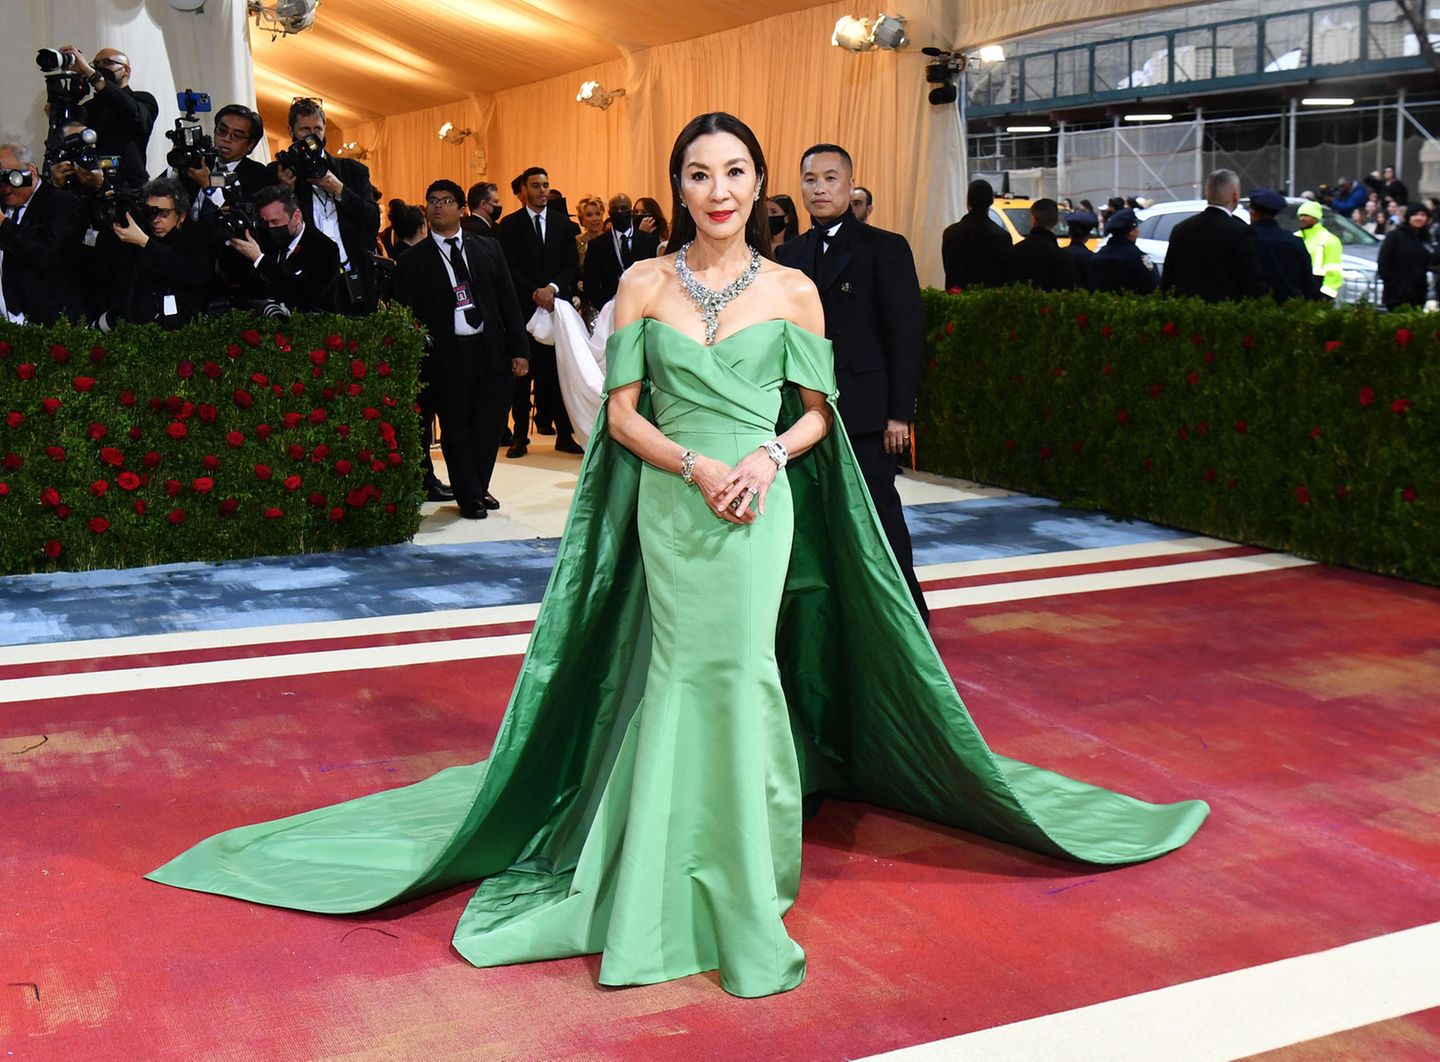 Michelle Yeoh landet in ihrem grünen Kleid von Prabal Gurung einen modischen Volltreffer hin.